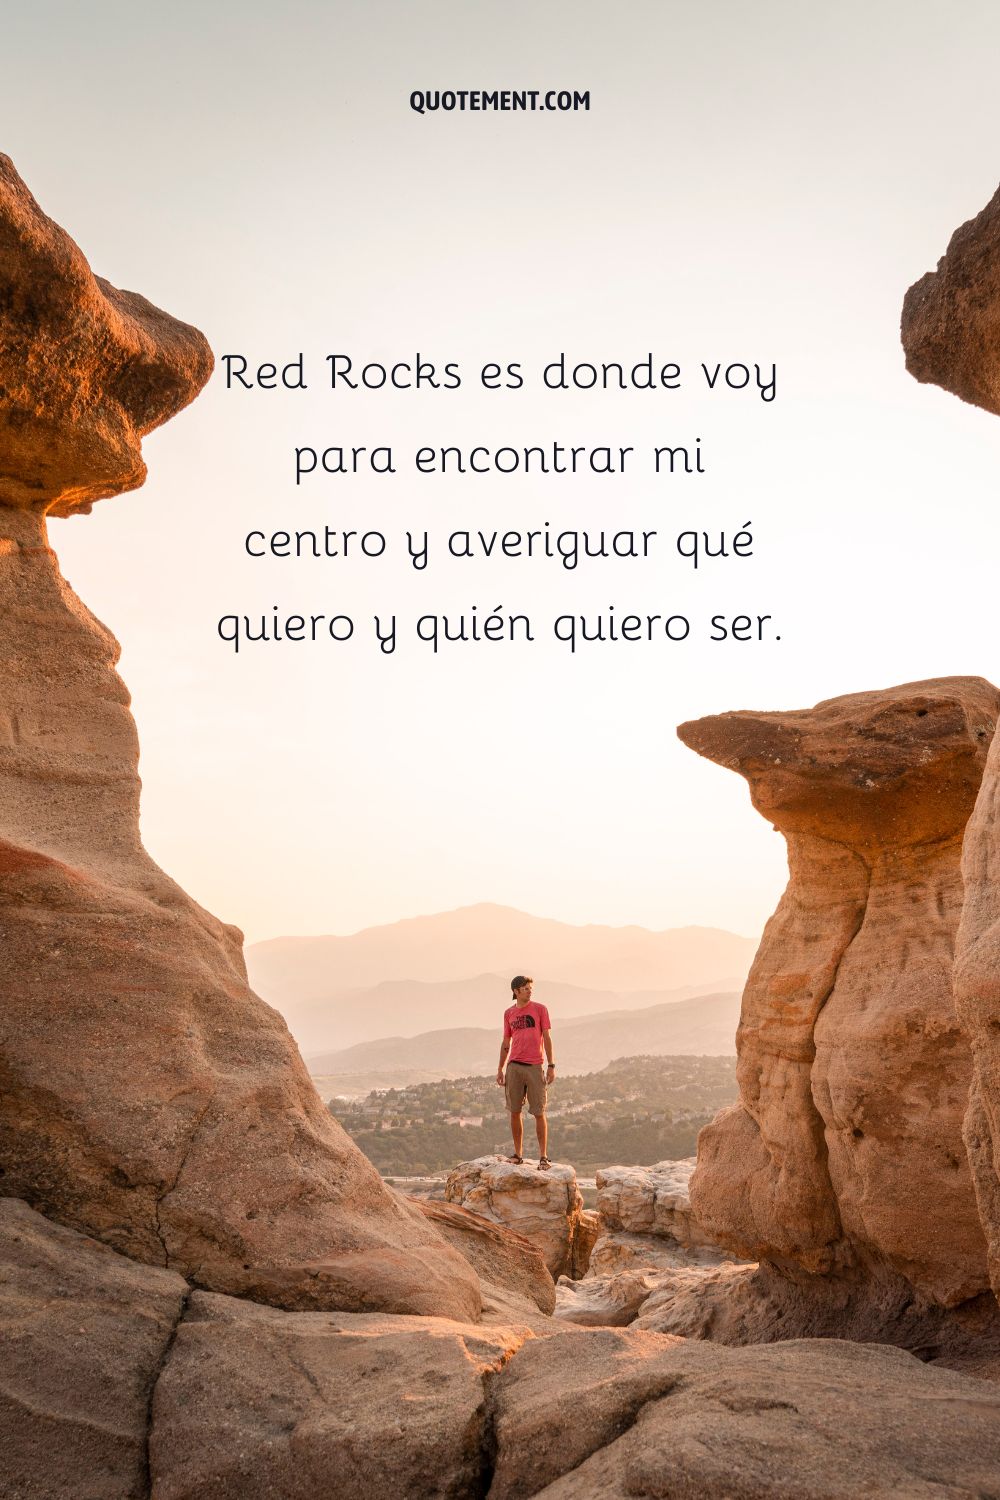 Red Rocks es donde voy para encontrar mi centro y averiguar qué quiero y quién quiero ser.